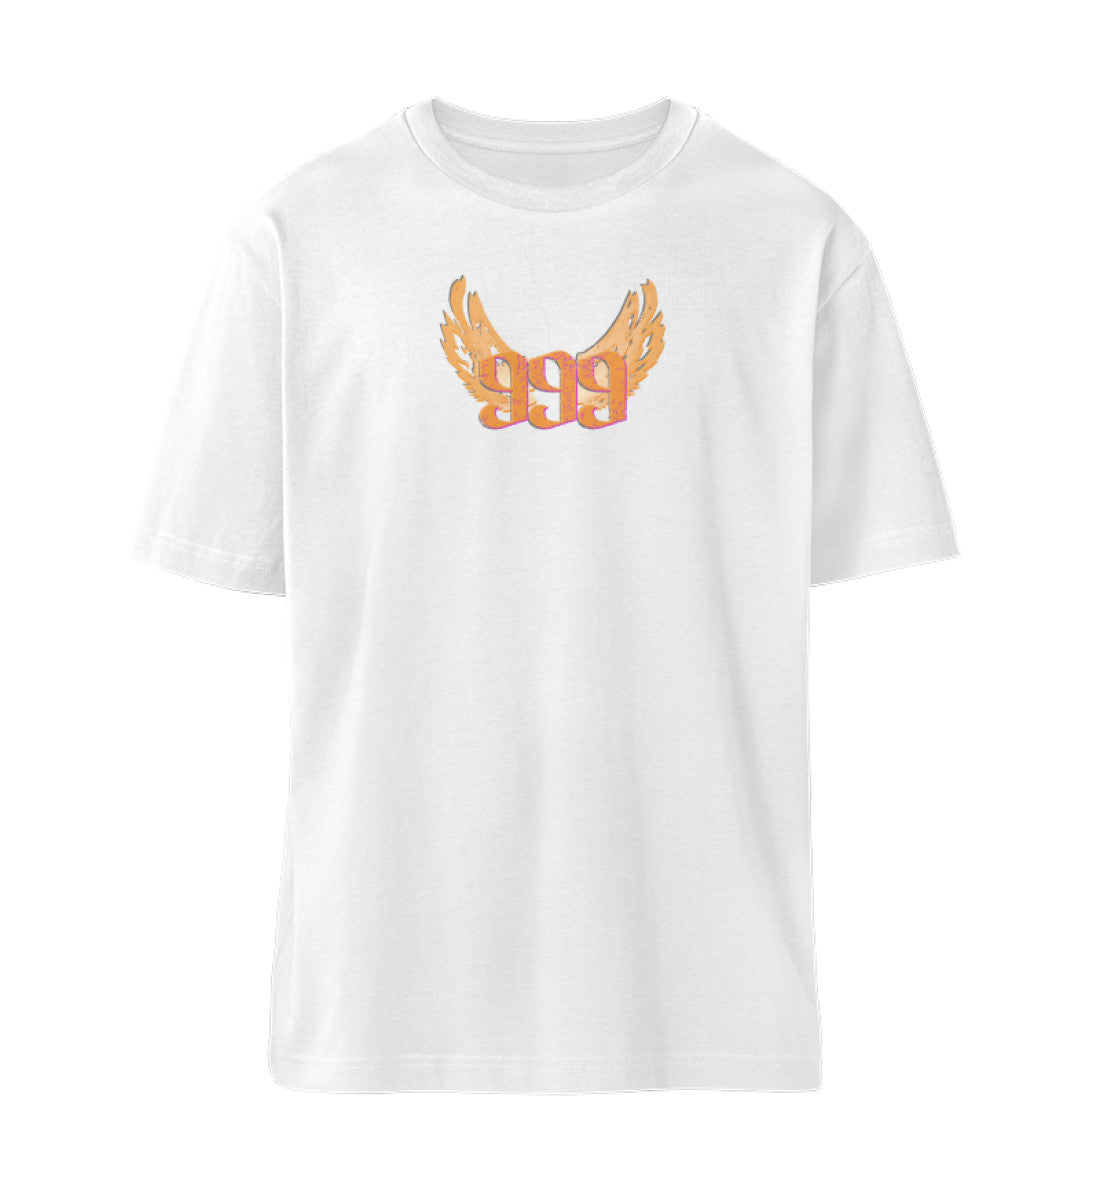 Weißes T-Shirt Unisex Relaxed Fit für Frauen und Männer bedruckt mit dem Design der Roger Rockawoo Kollektion Engelszahl 999